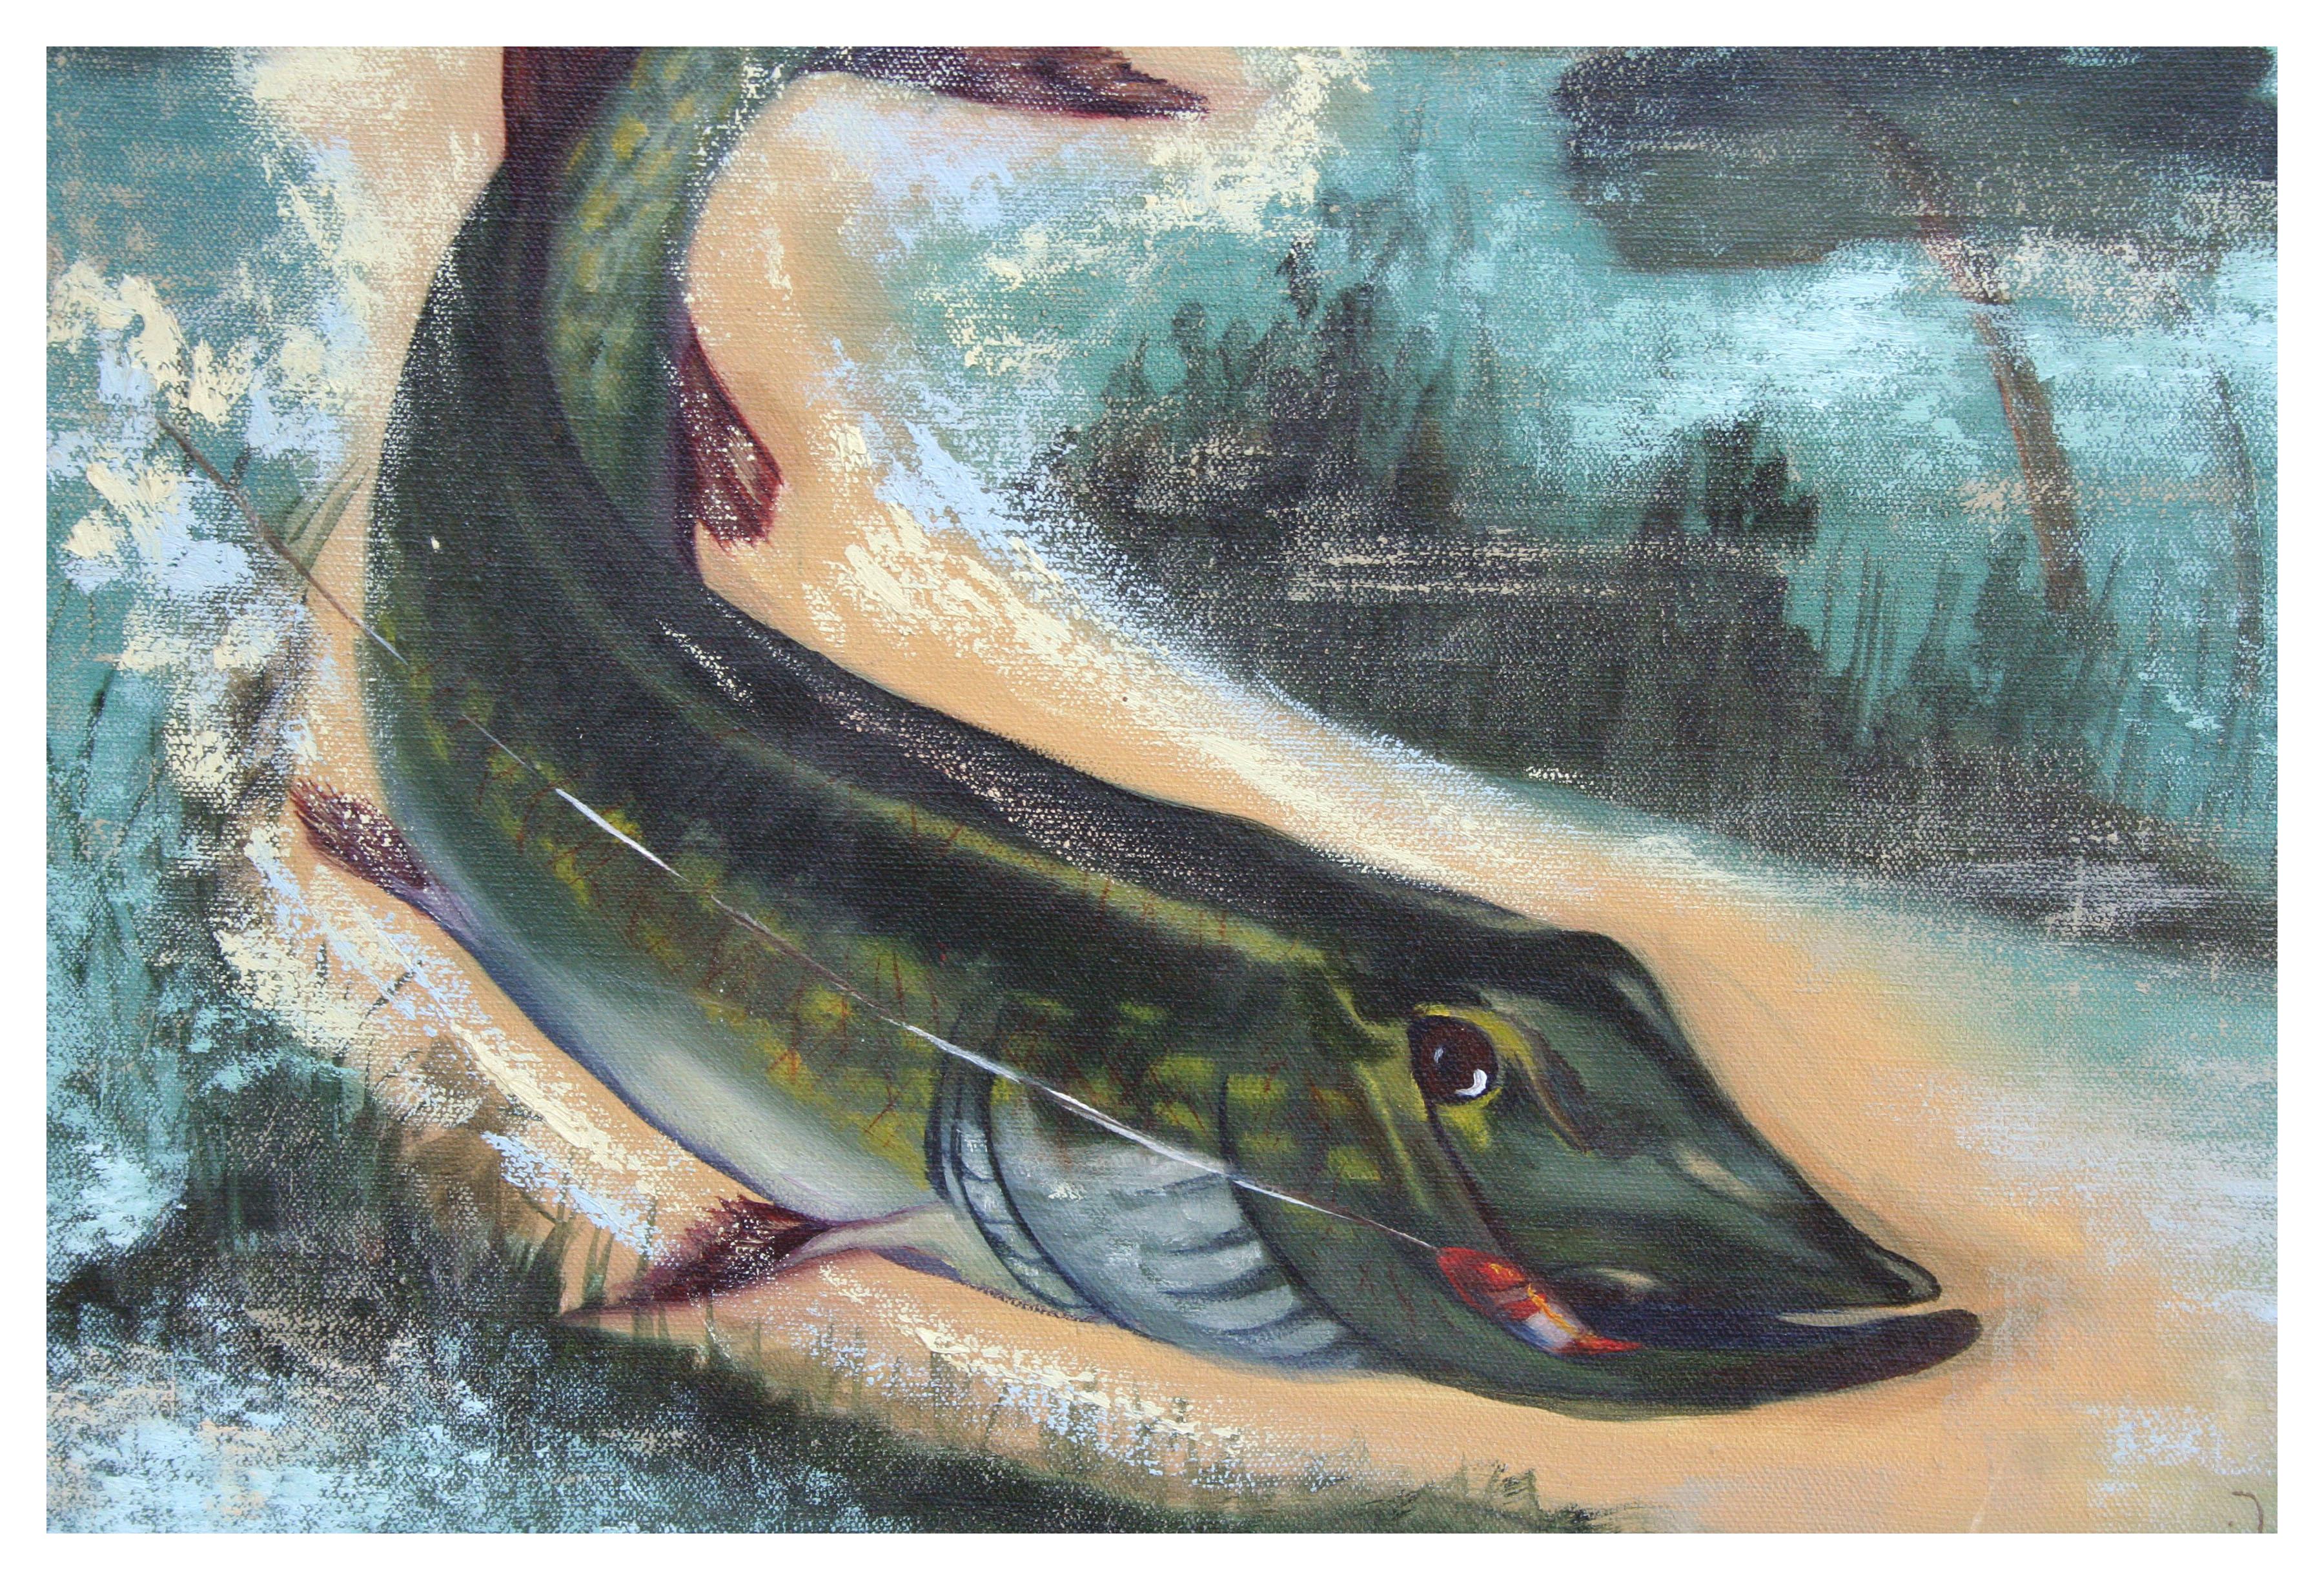 Northern Pike, Fisch auf Haken  – Painting von Unknown